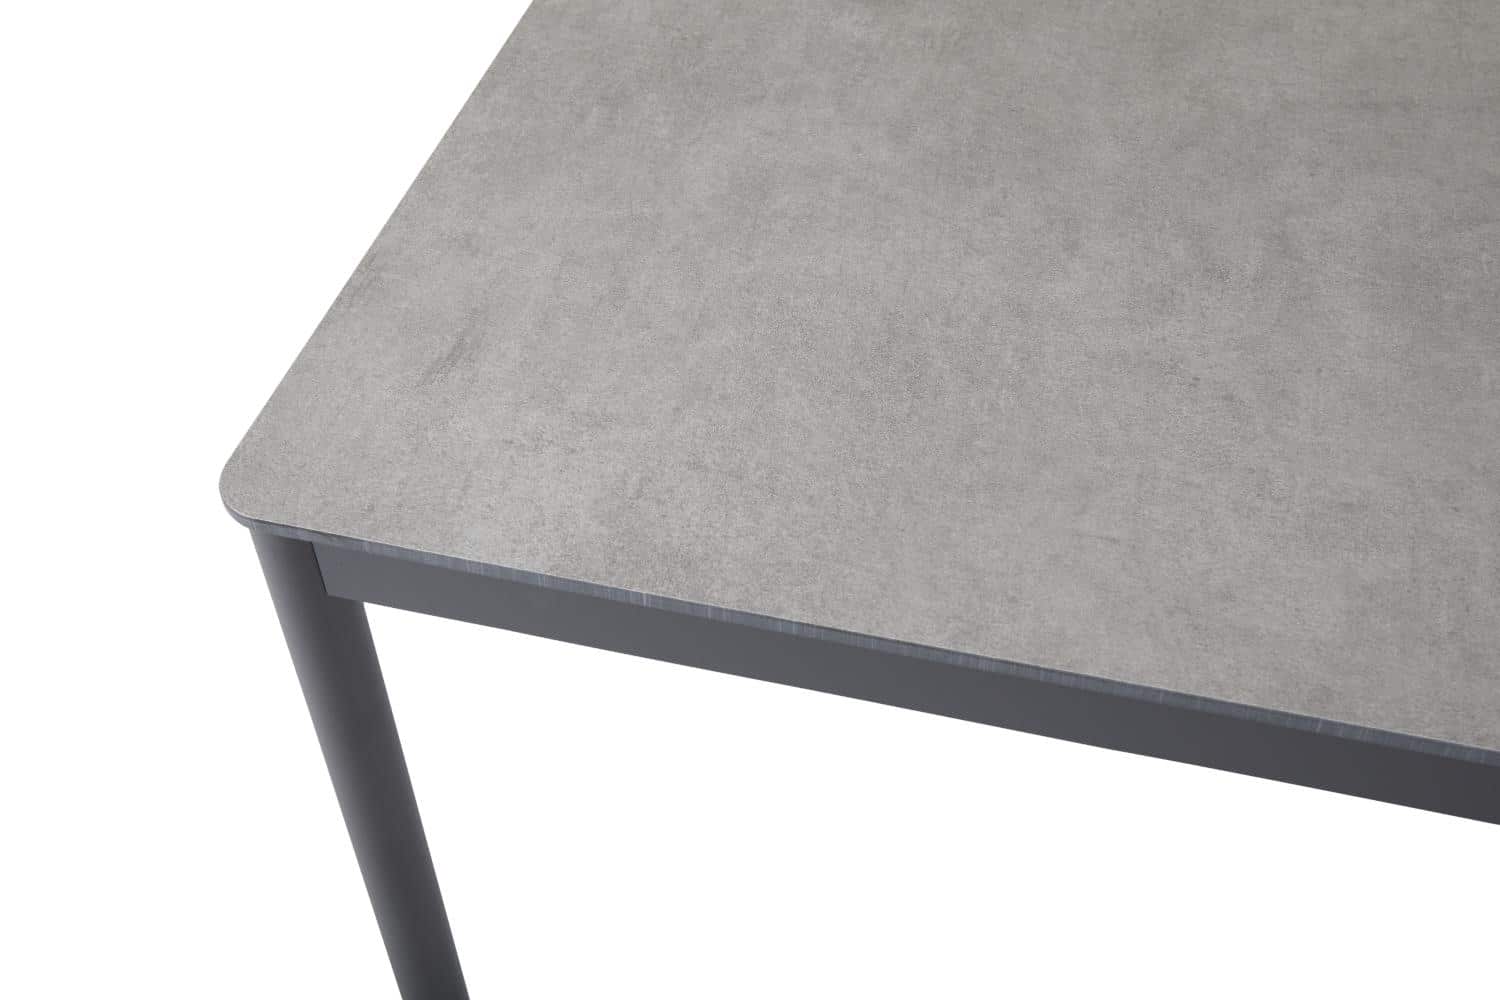 Brafab Nox Bordsstativ grå med benställning i antracitgrå aluminium. Laminatskiva i grå betonglook.